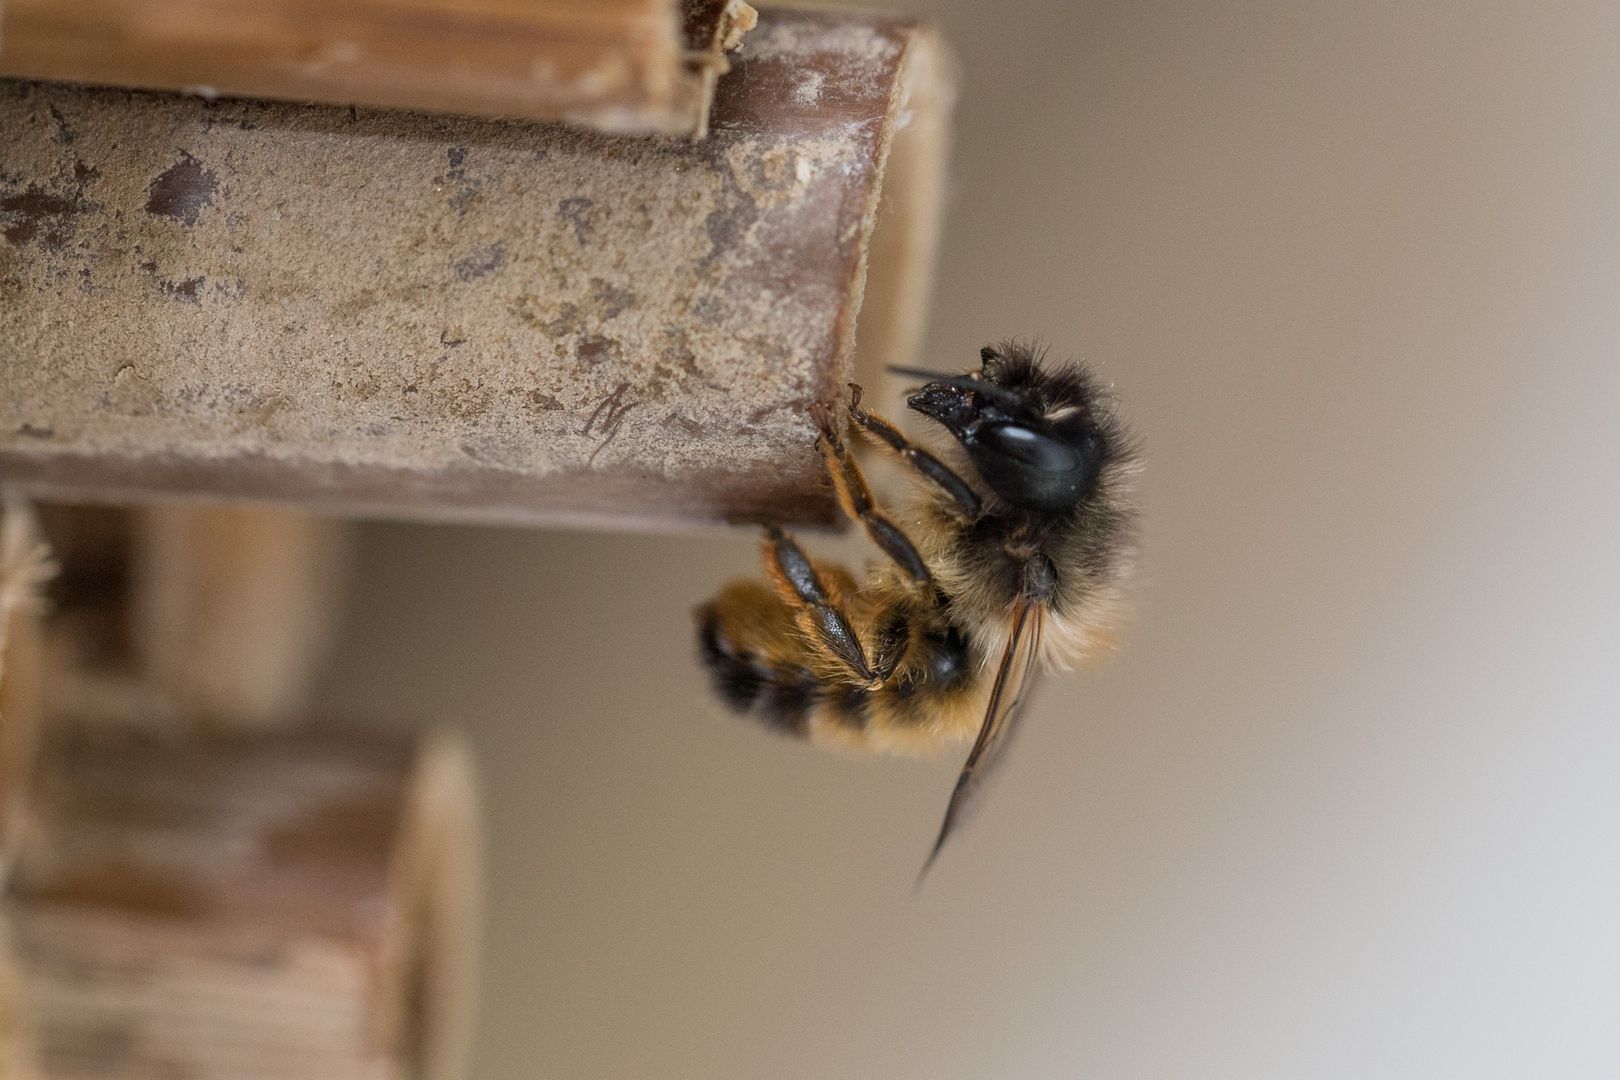 Nisthilfen tragen zum Artenschutz bei und man kann hier das Verhalten der Wildbienen gut beobachten. Foto: Hans Leunig